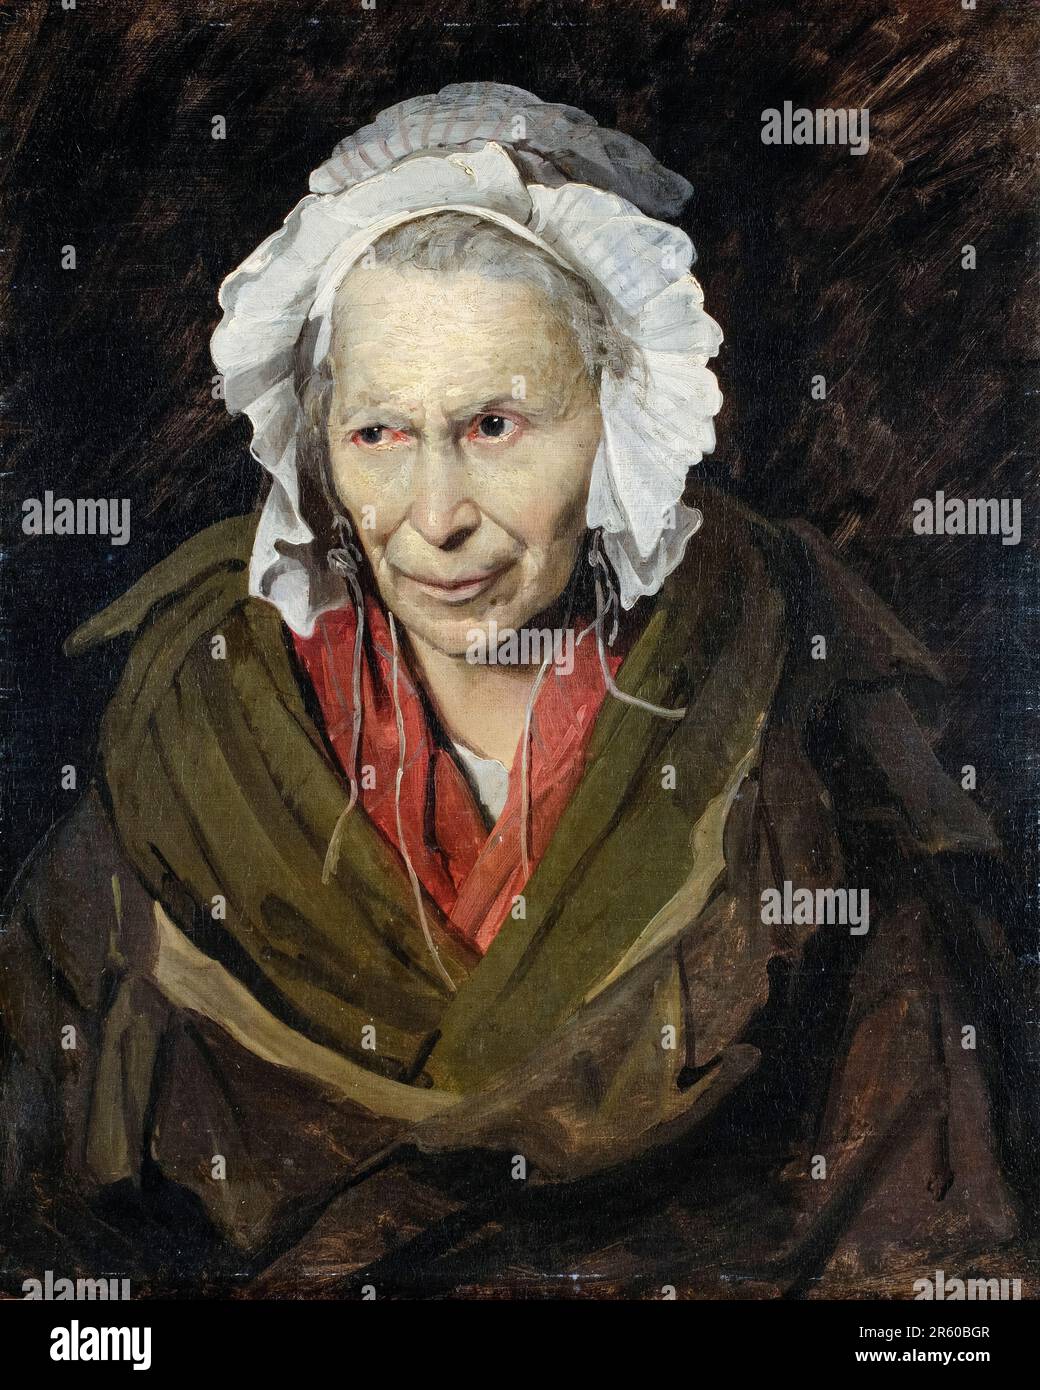 Theodore Gericault, Une femme souffrant de l'envie obsessionnelle, portrait peint à l'huile sur toile, 1819-1820 Banque D'Images